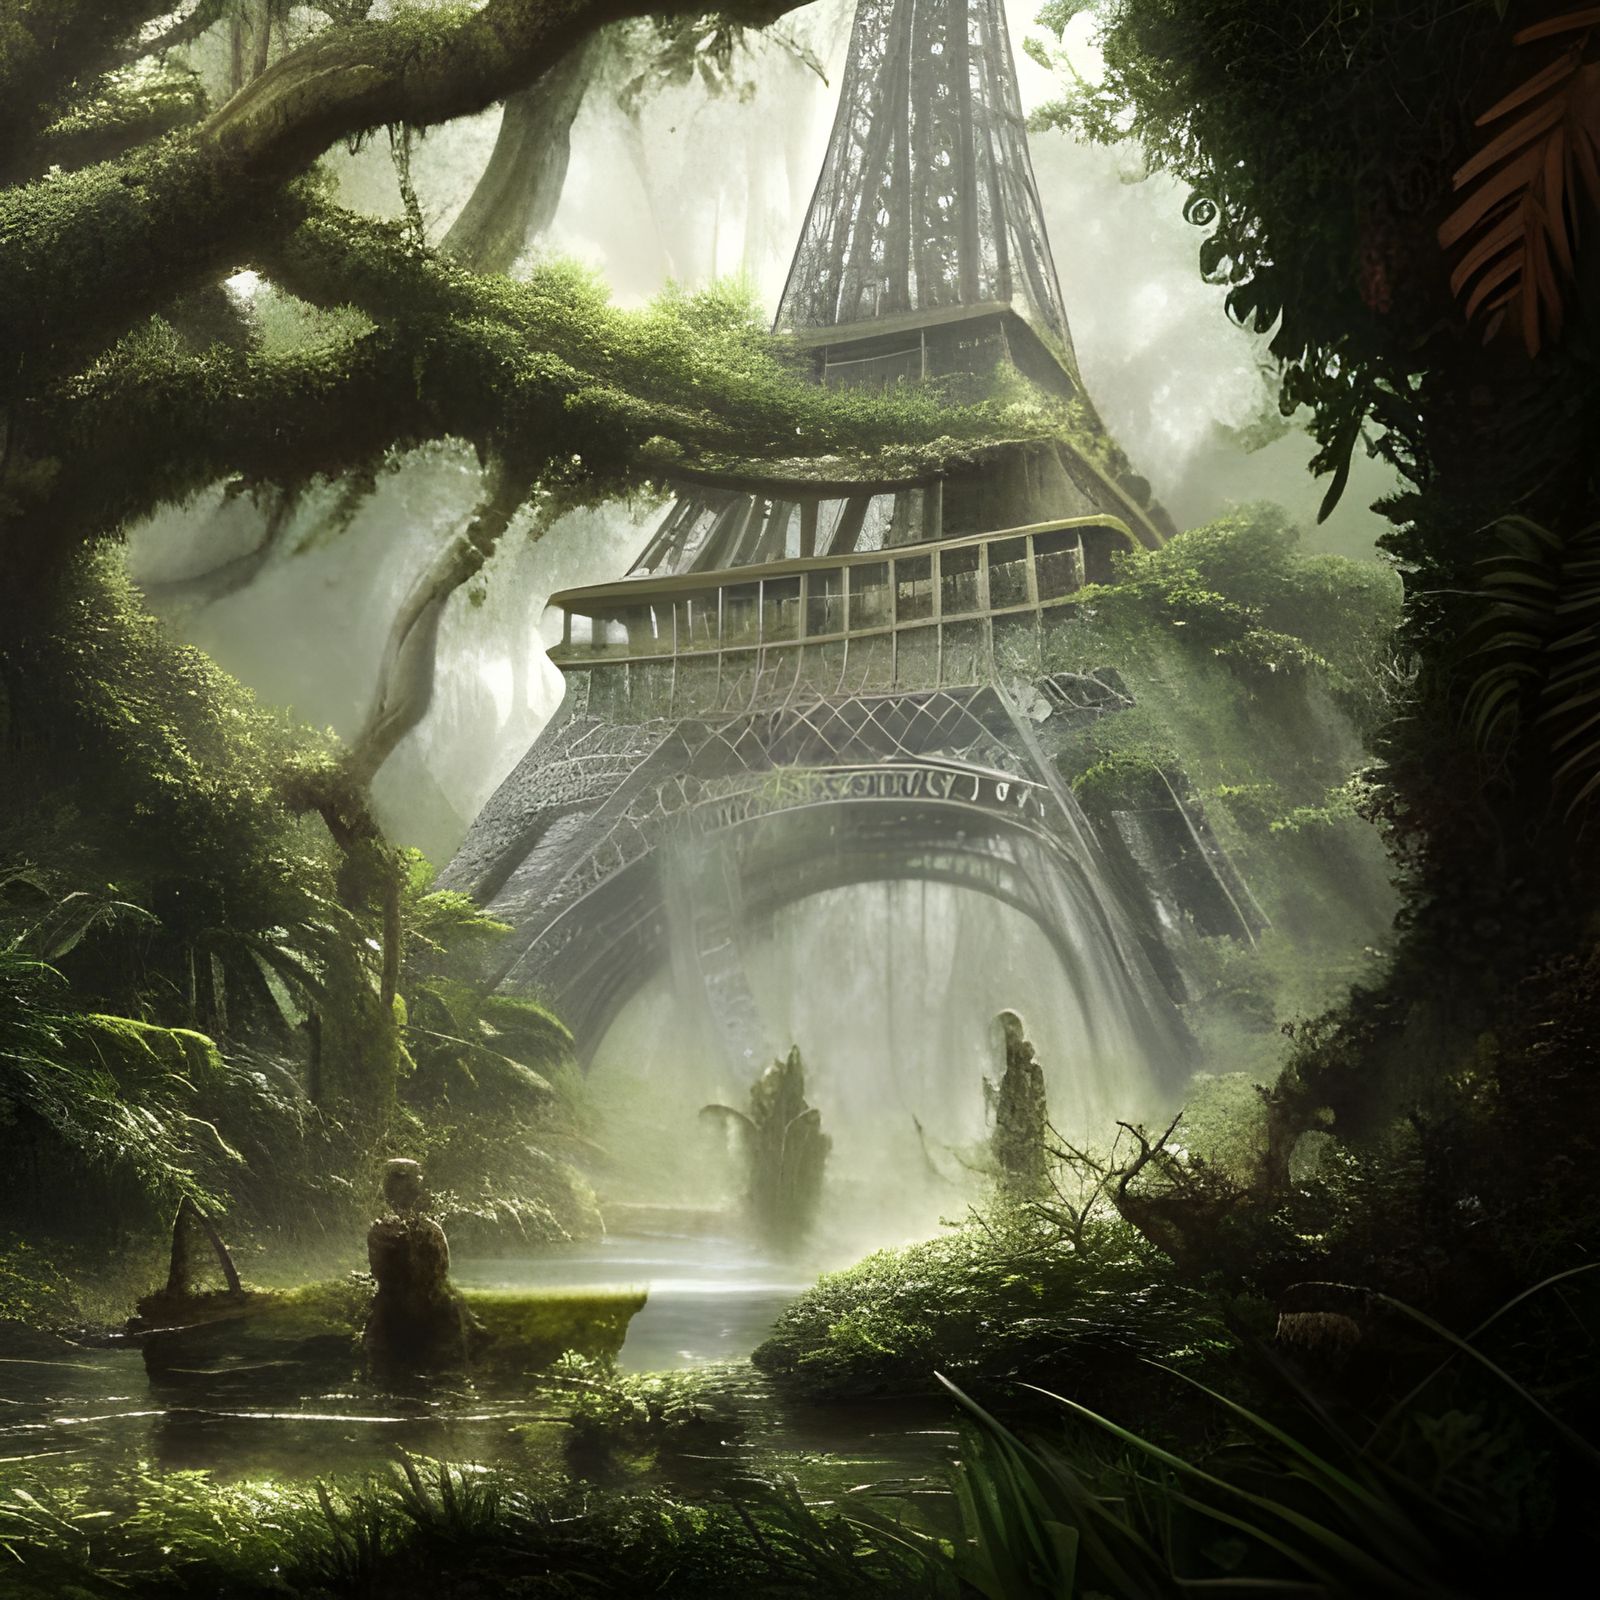 Paris in the Swamp